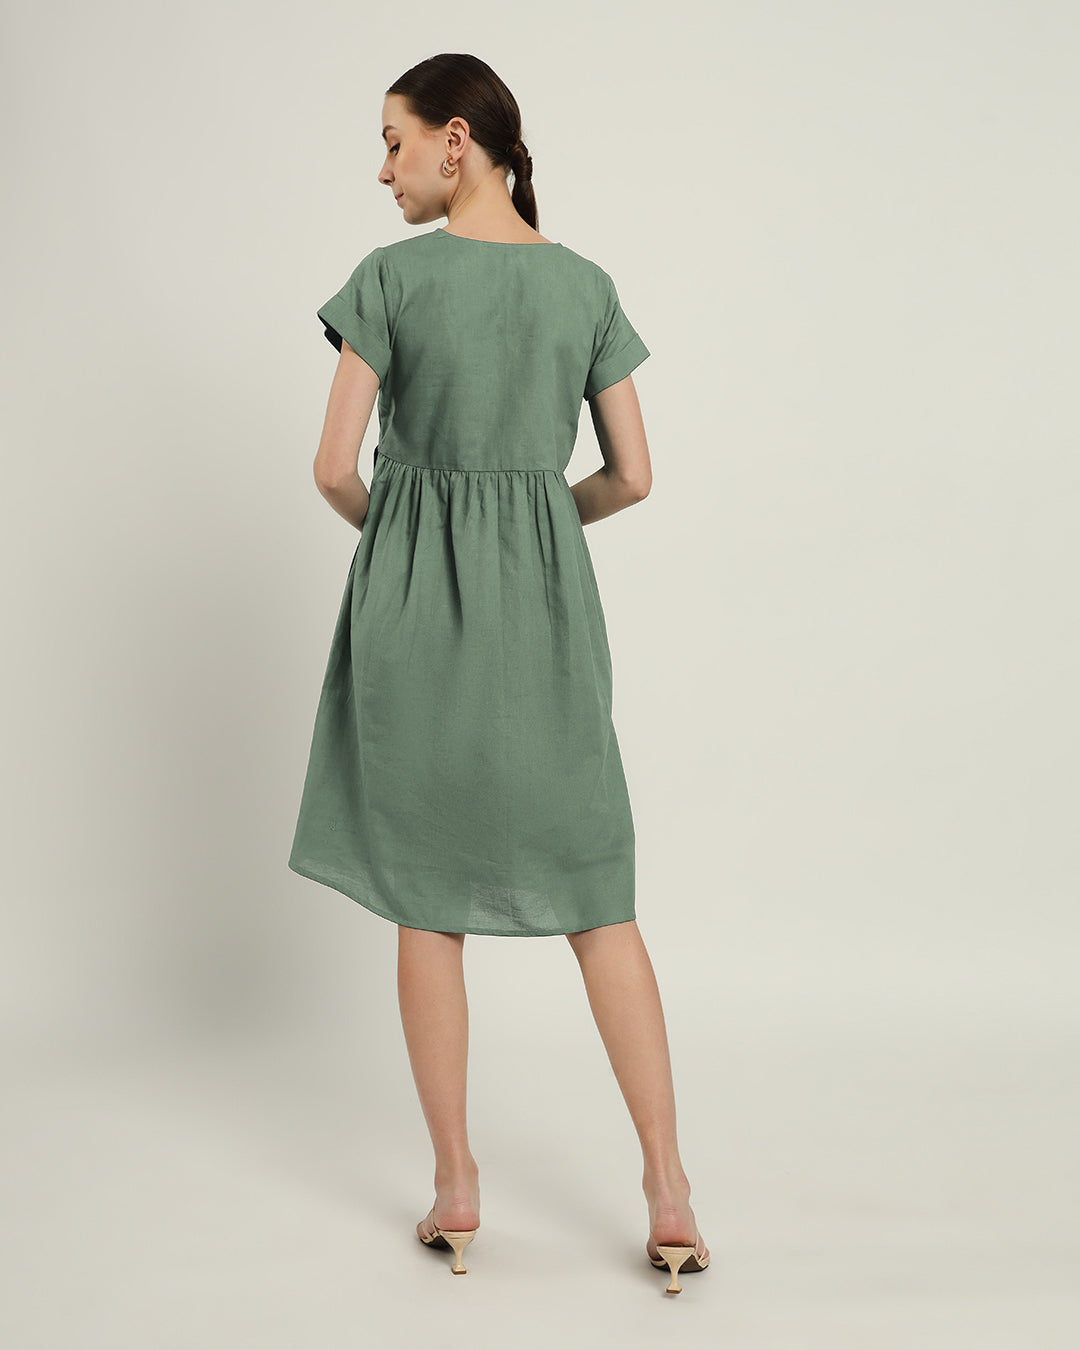 The Valence Mint Cotton Dress